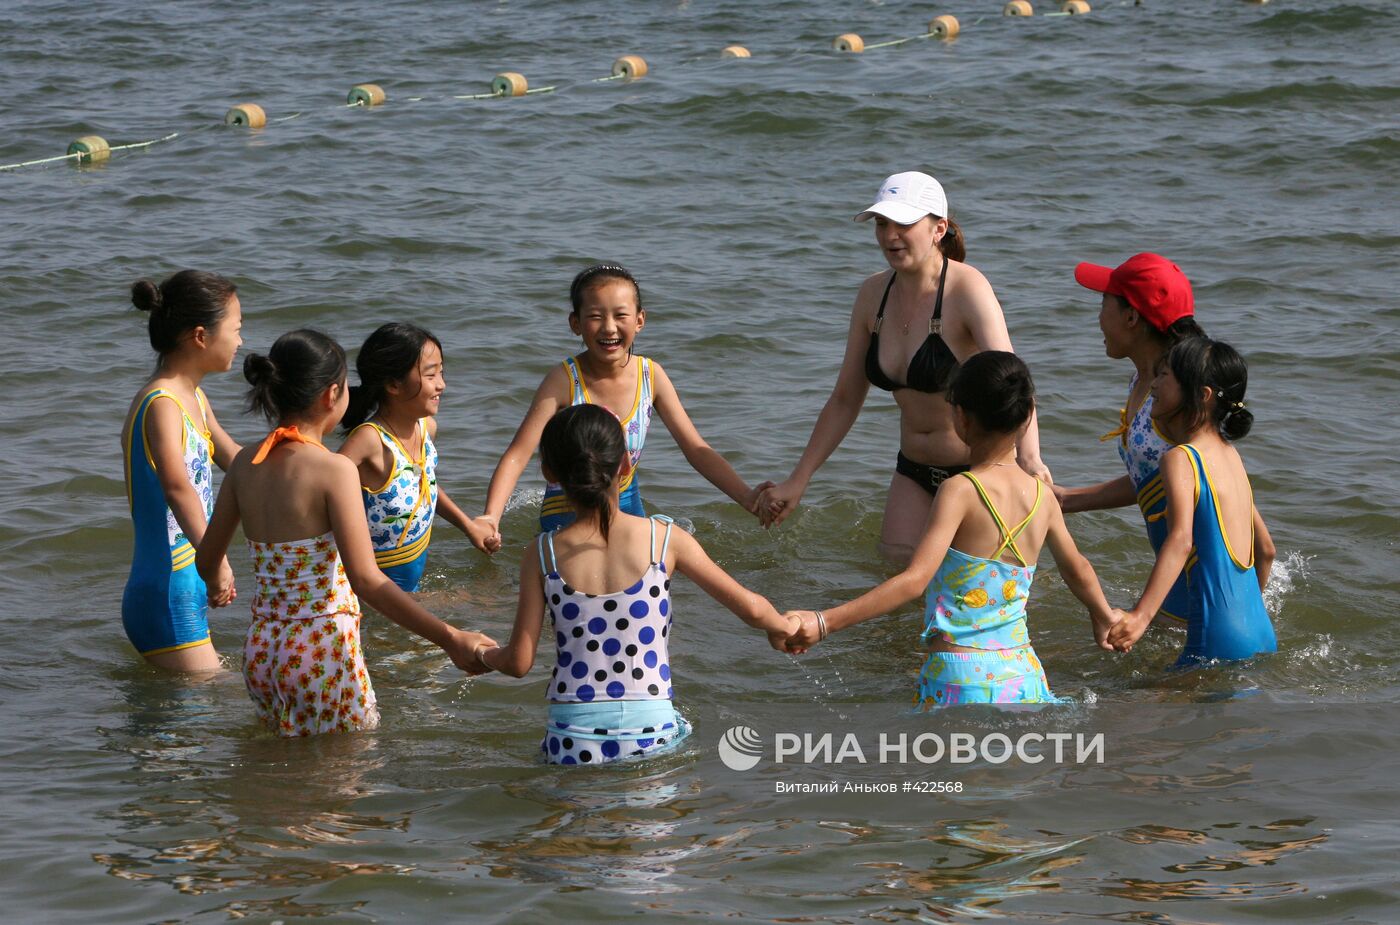 Всероссийский детский центр "Океан" во Владивостоке